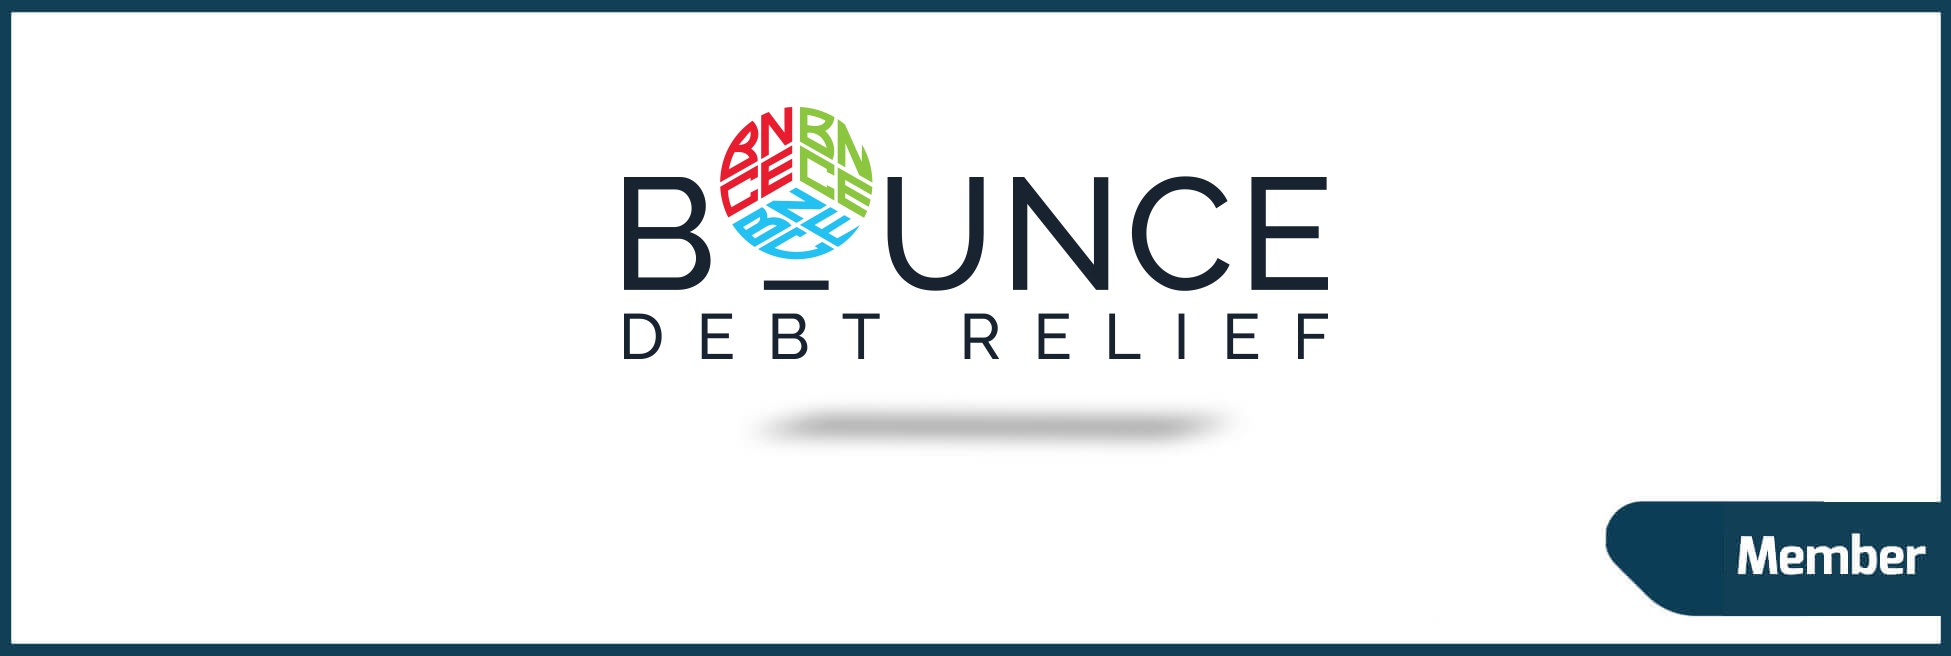 Bounce Debt Relief, Inc